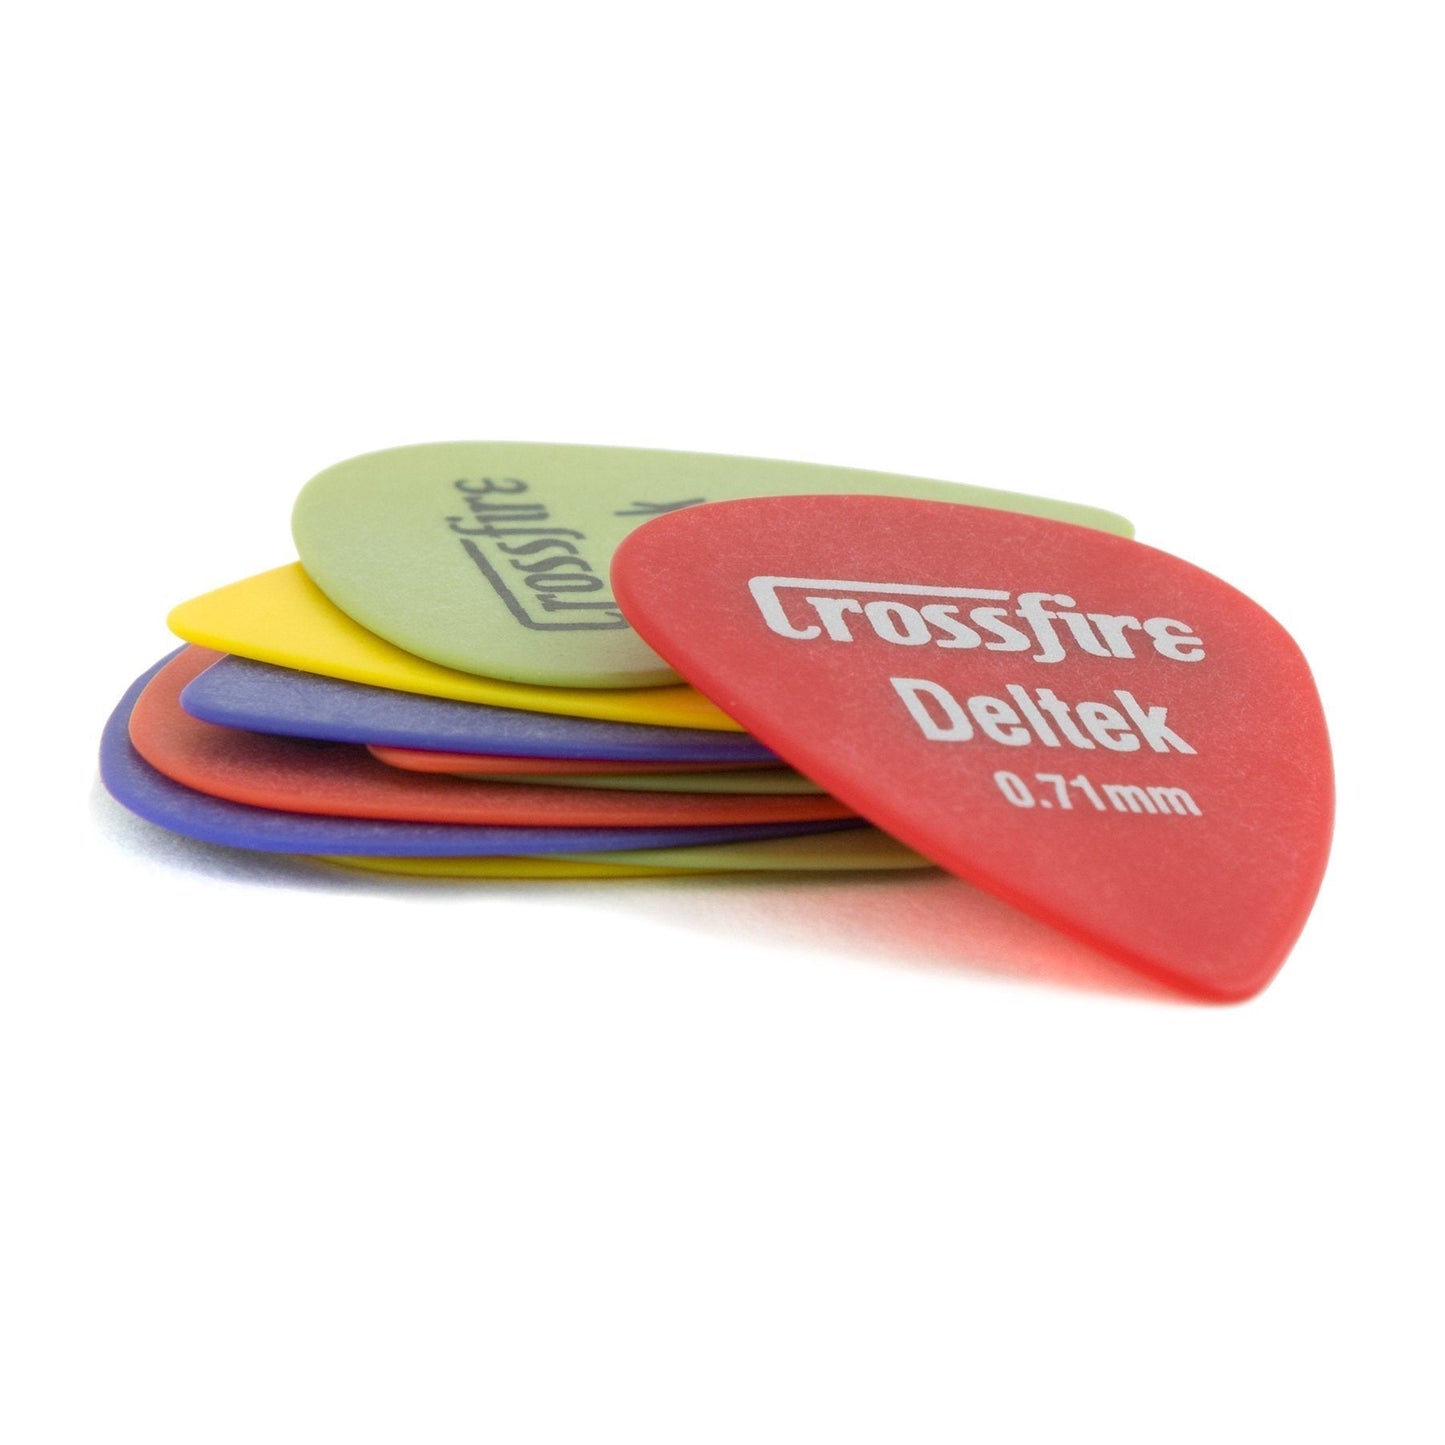 Crossfire Deltek 0.71mm Canned Guitar Picks (20 Pack Assorted)